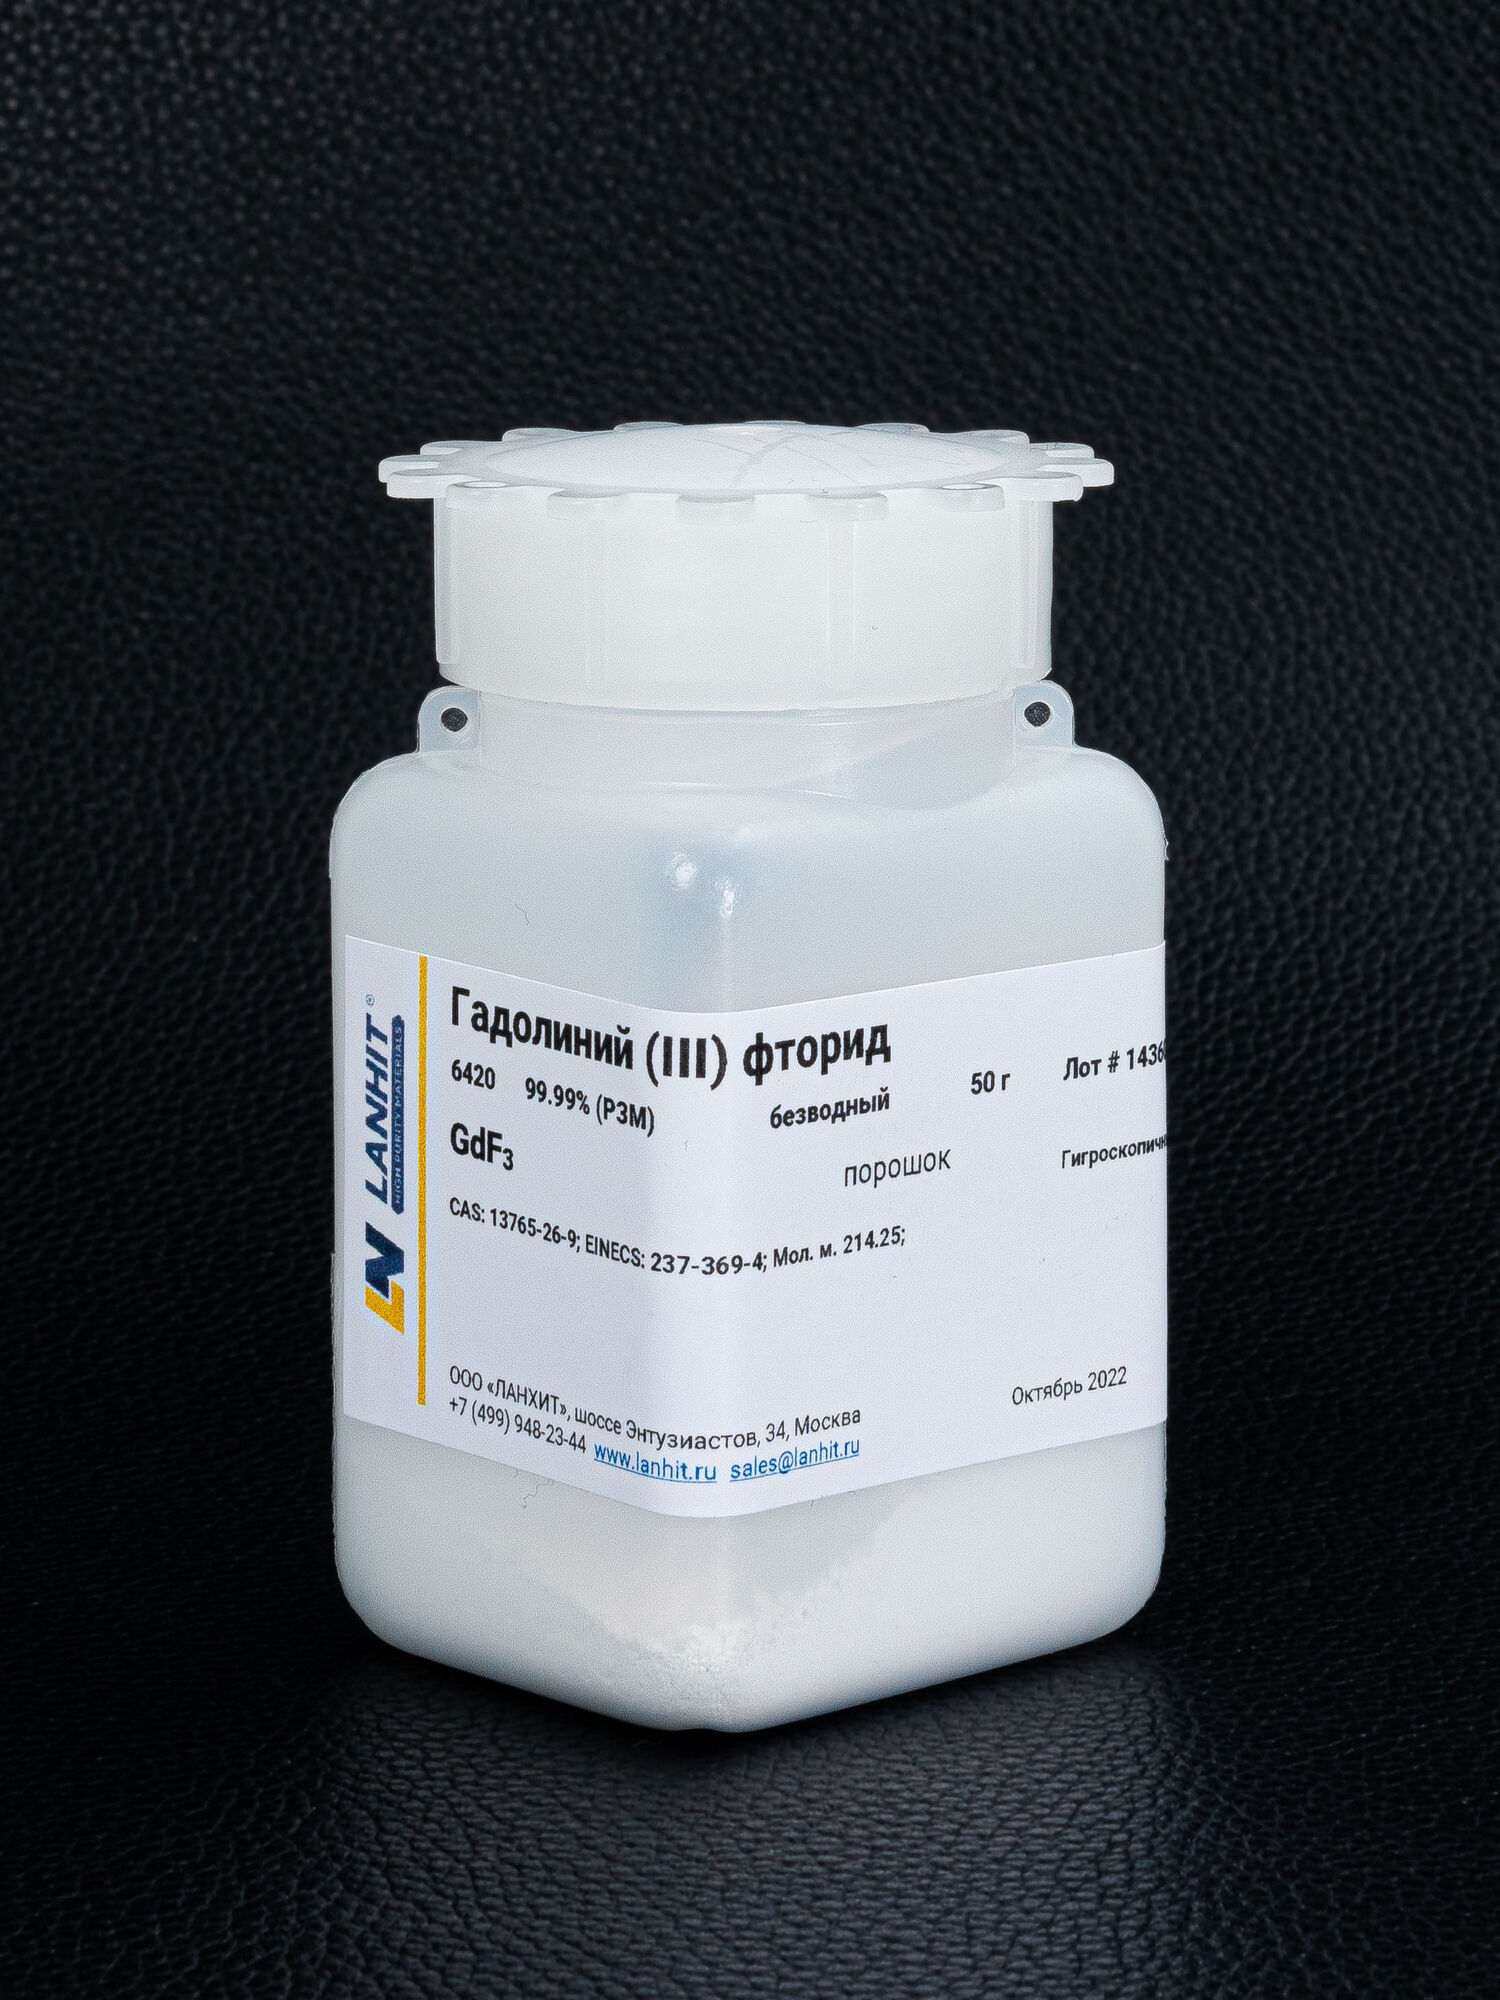 Гадолиний (III) фторид, безводный, 99.9% (РЗМ), порошок